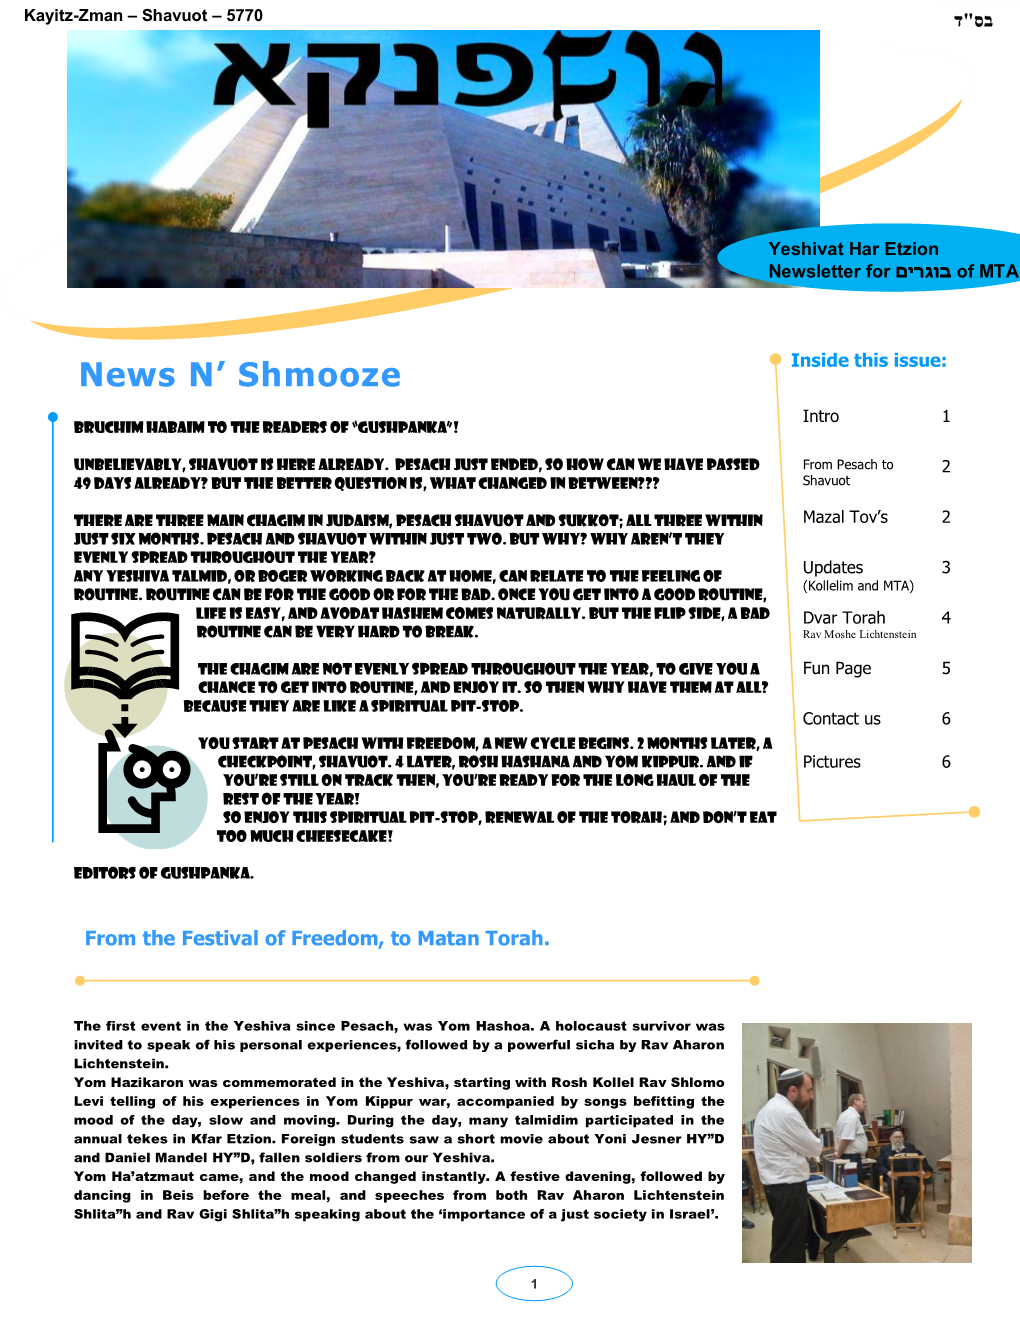 News N' Shmooze